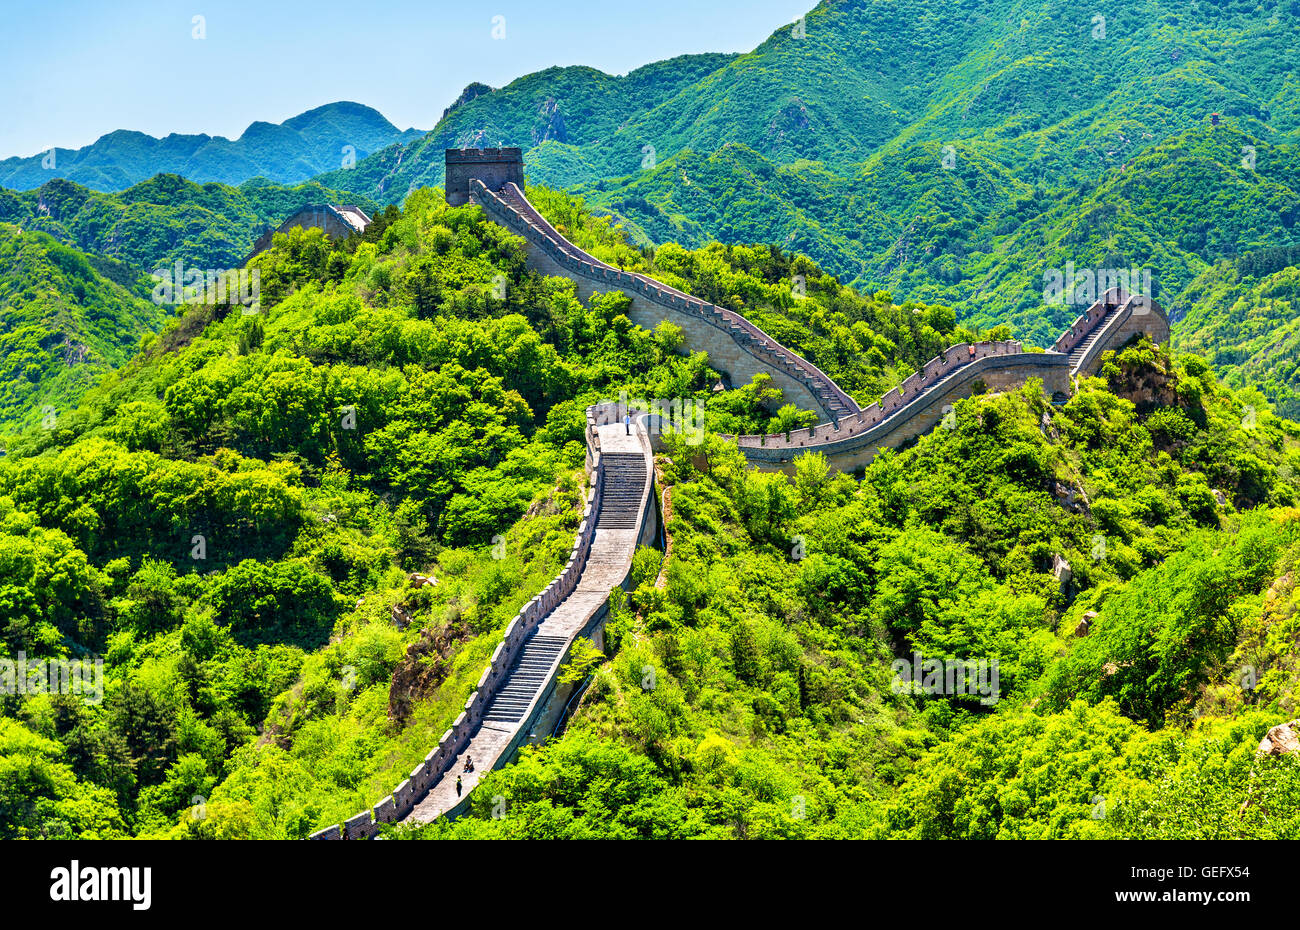 View of the Great Wall at Badaling - China Stock Photo